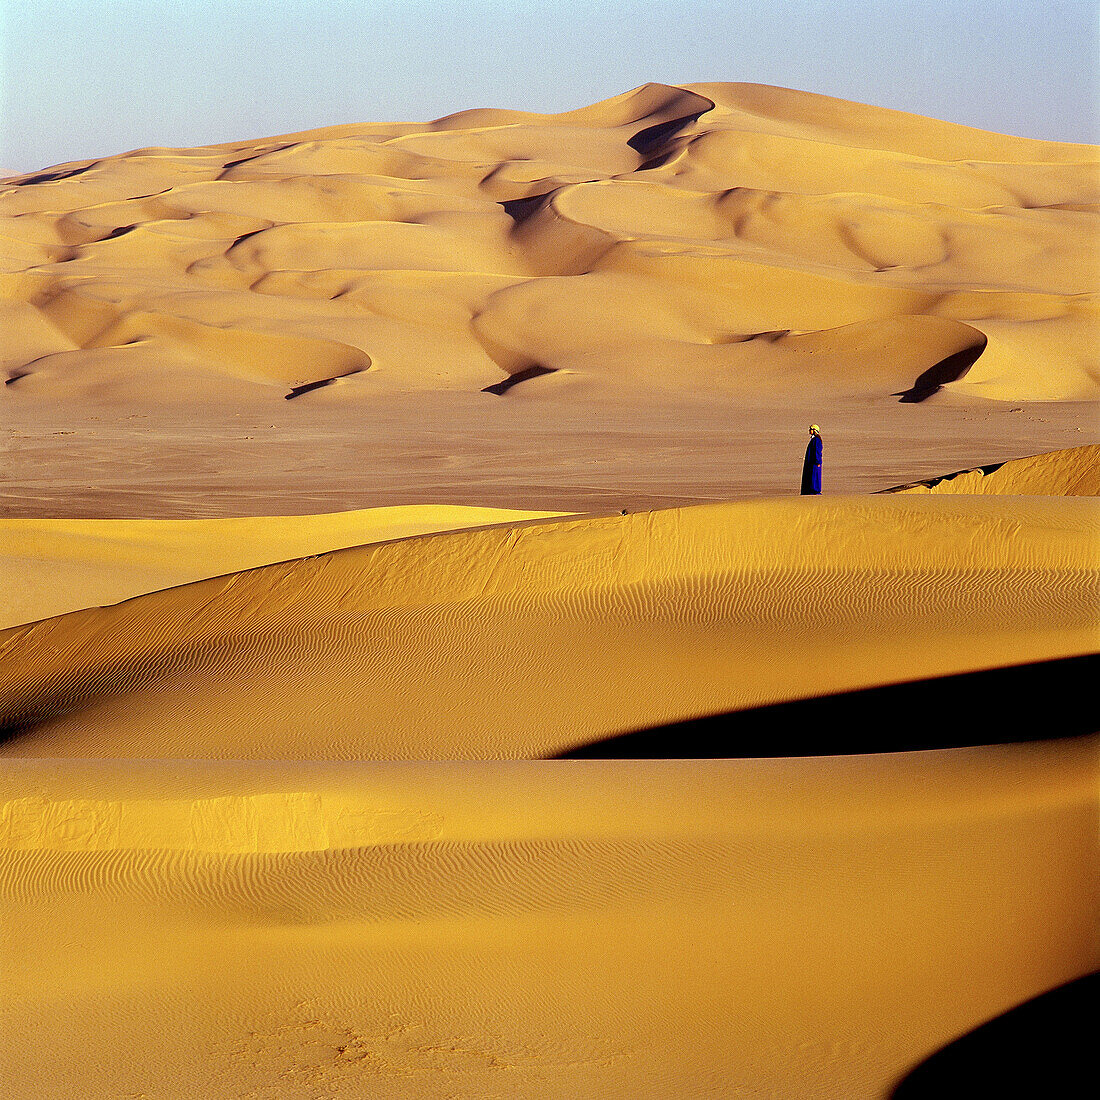 Ténéré desert. Argelia.